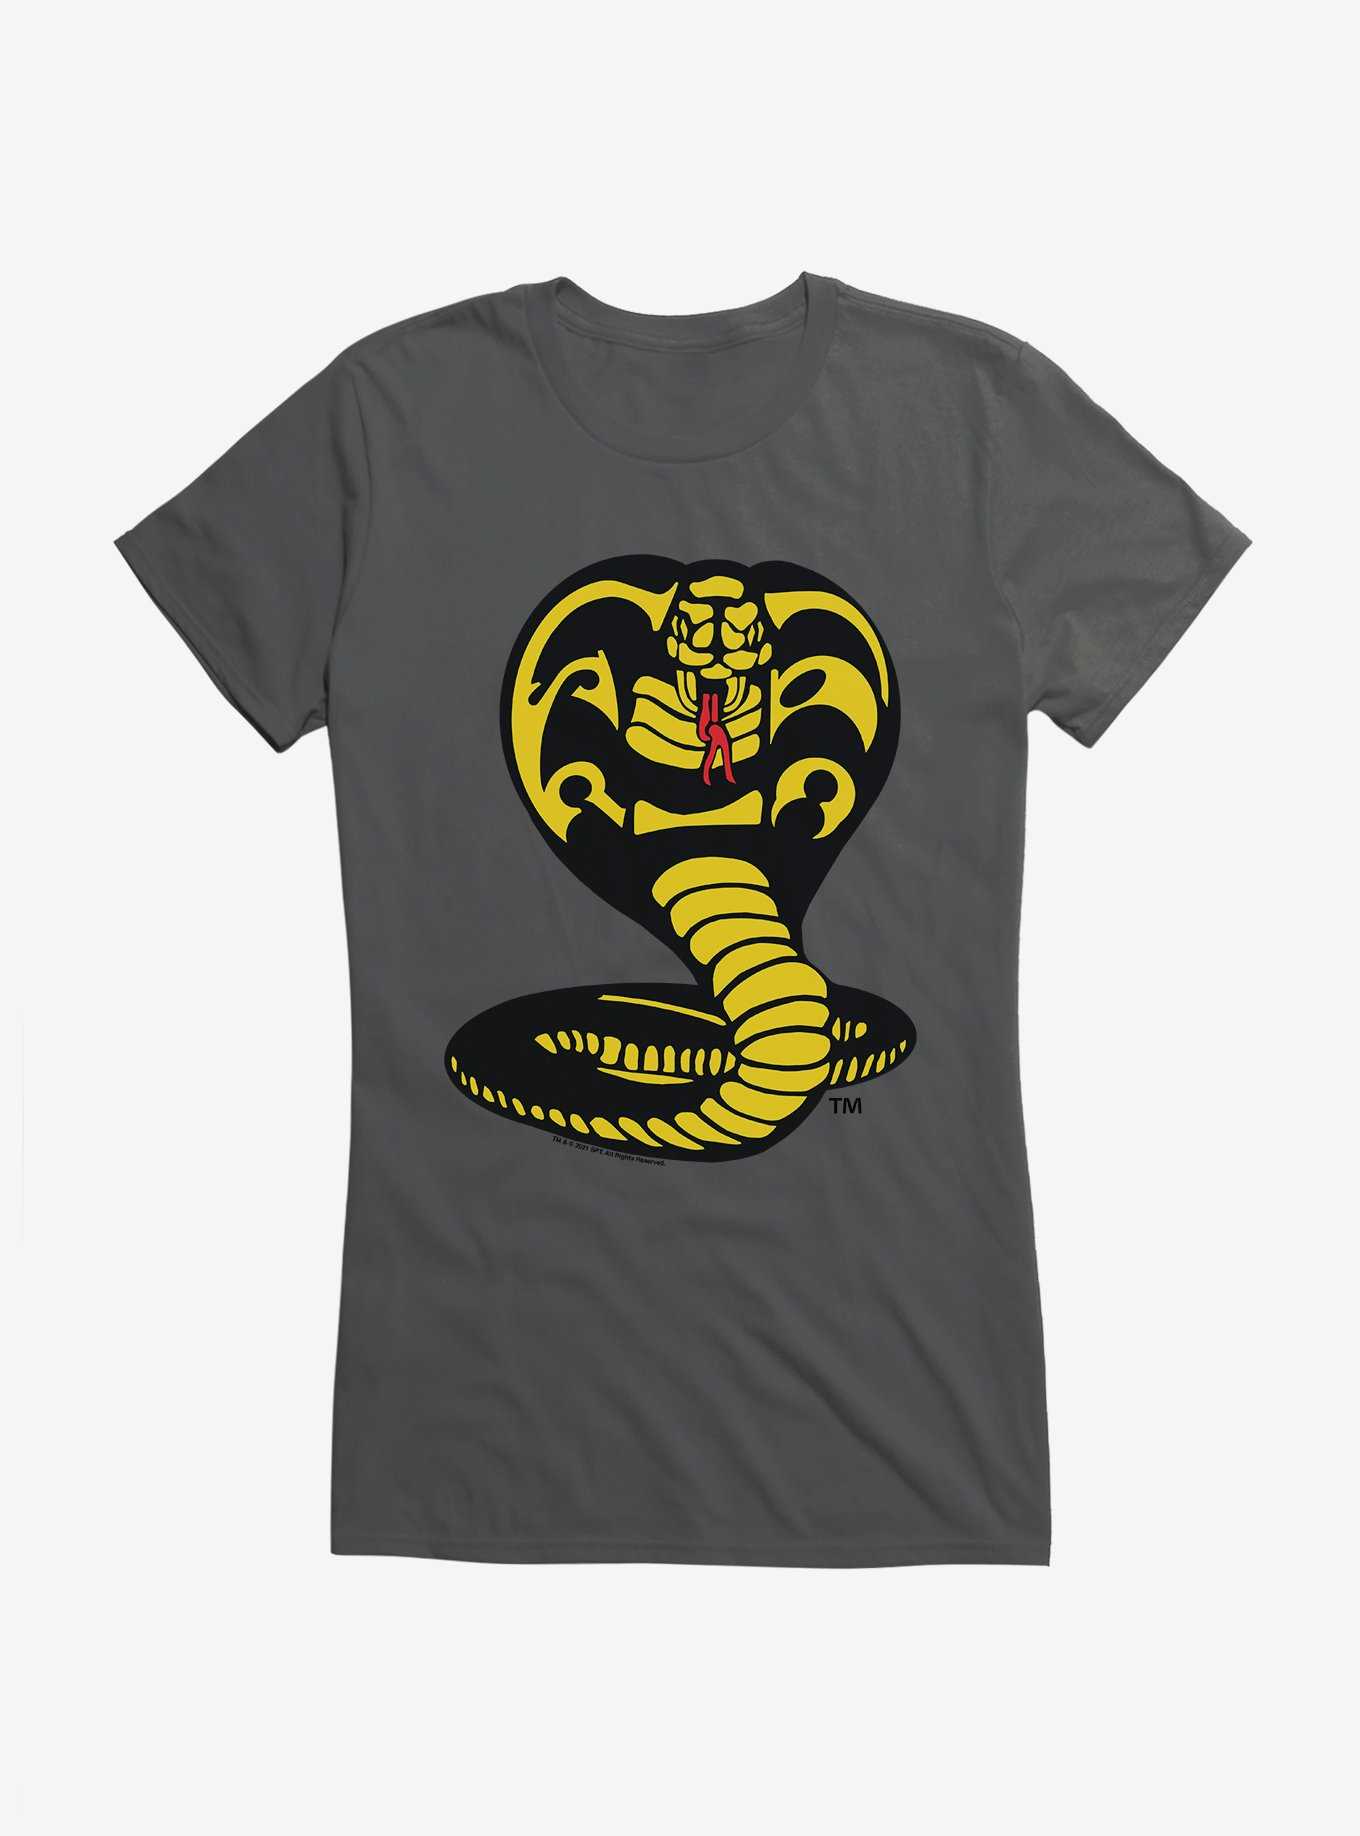 Cobra Kai Logo Girls T-Shirt, , hi-res